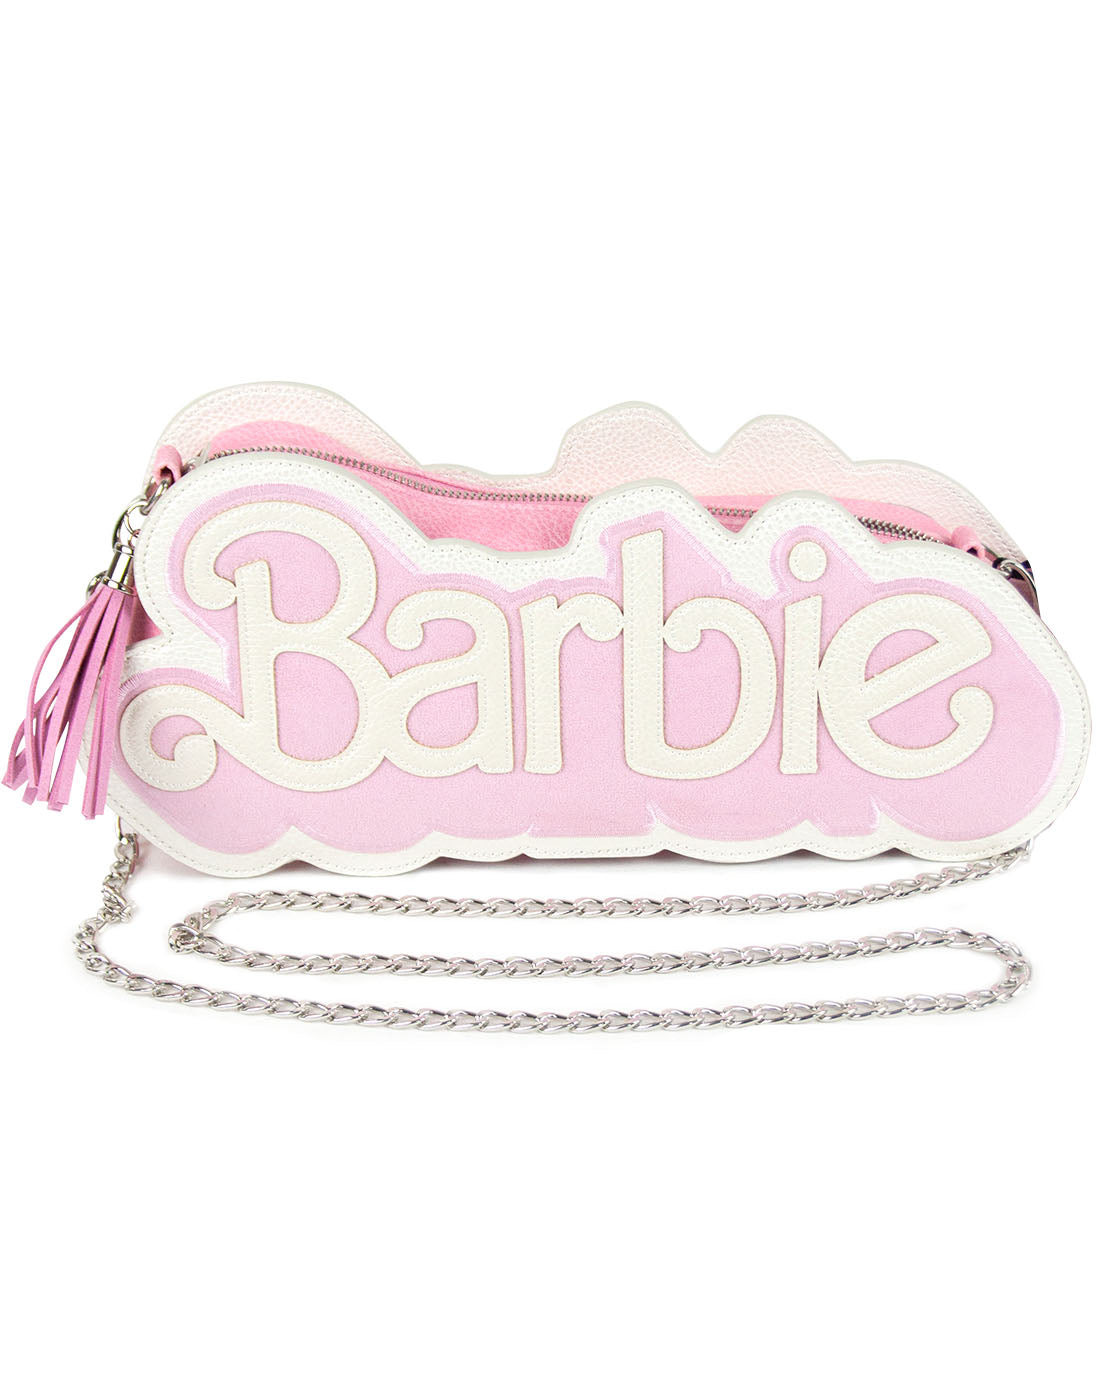 Barbie Co-Branded Spring Handbag: Small Fragrance High Sense Barrel Sling  Bag, क्रॉस बॉडी बैग, कंधे पर आड़ा पहने जाने वाला बैग - Miss Merylin, Imphal  | ID: 2852677955397